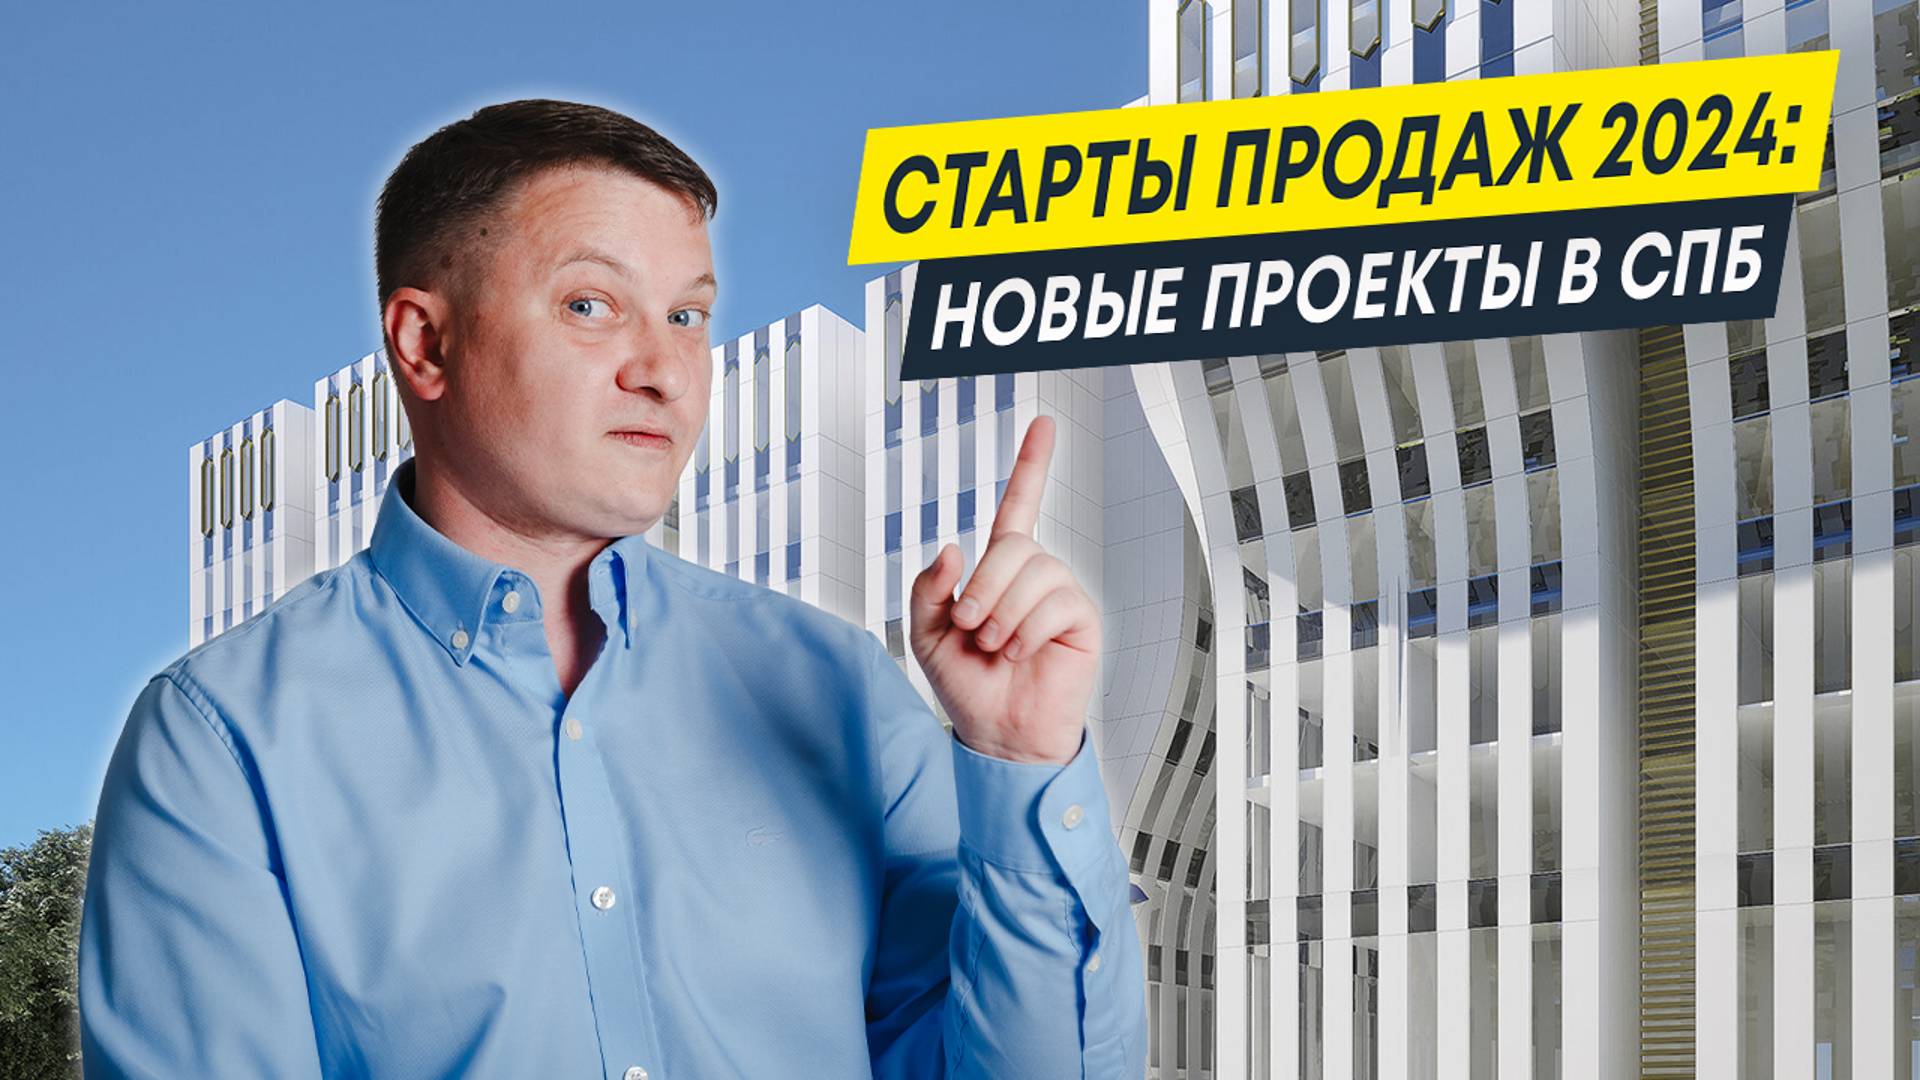 Старты продаж 2024: новые проекты в СПб | Квартиры и новостройки СПб